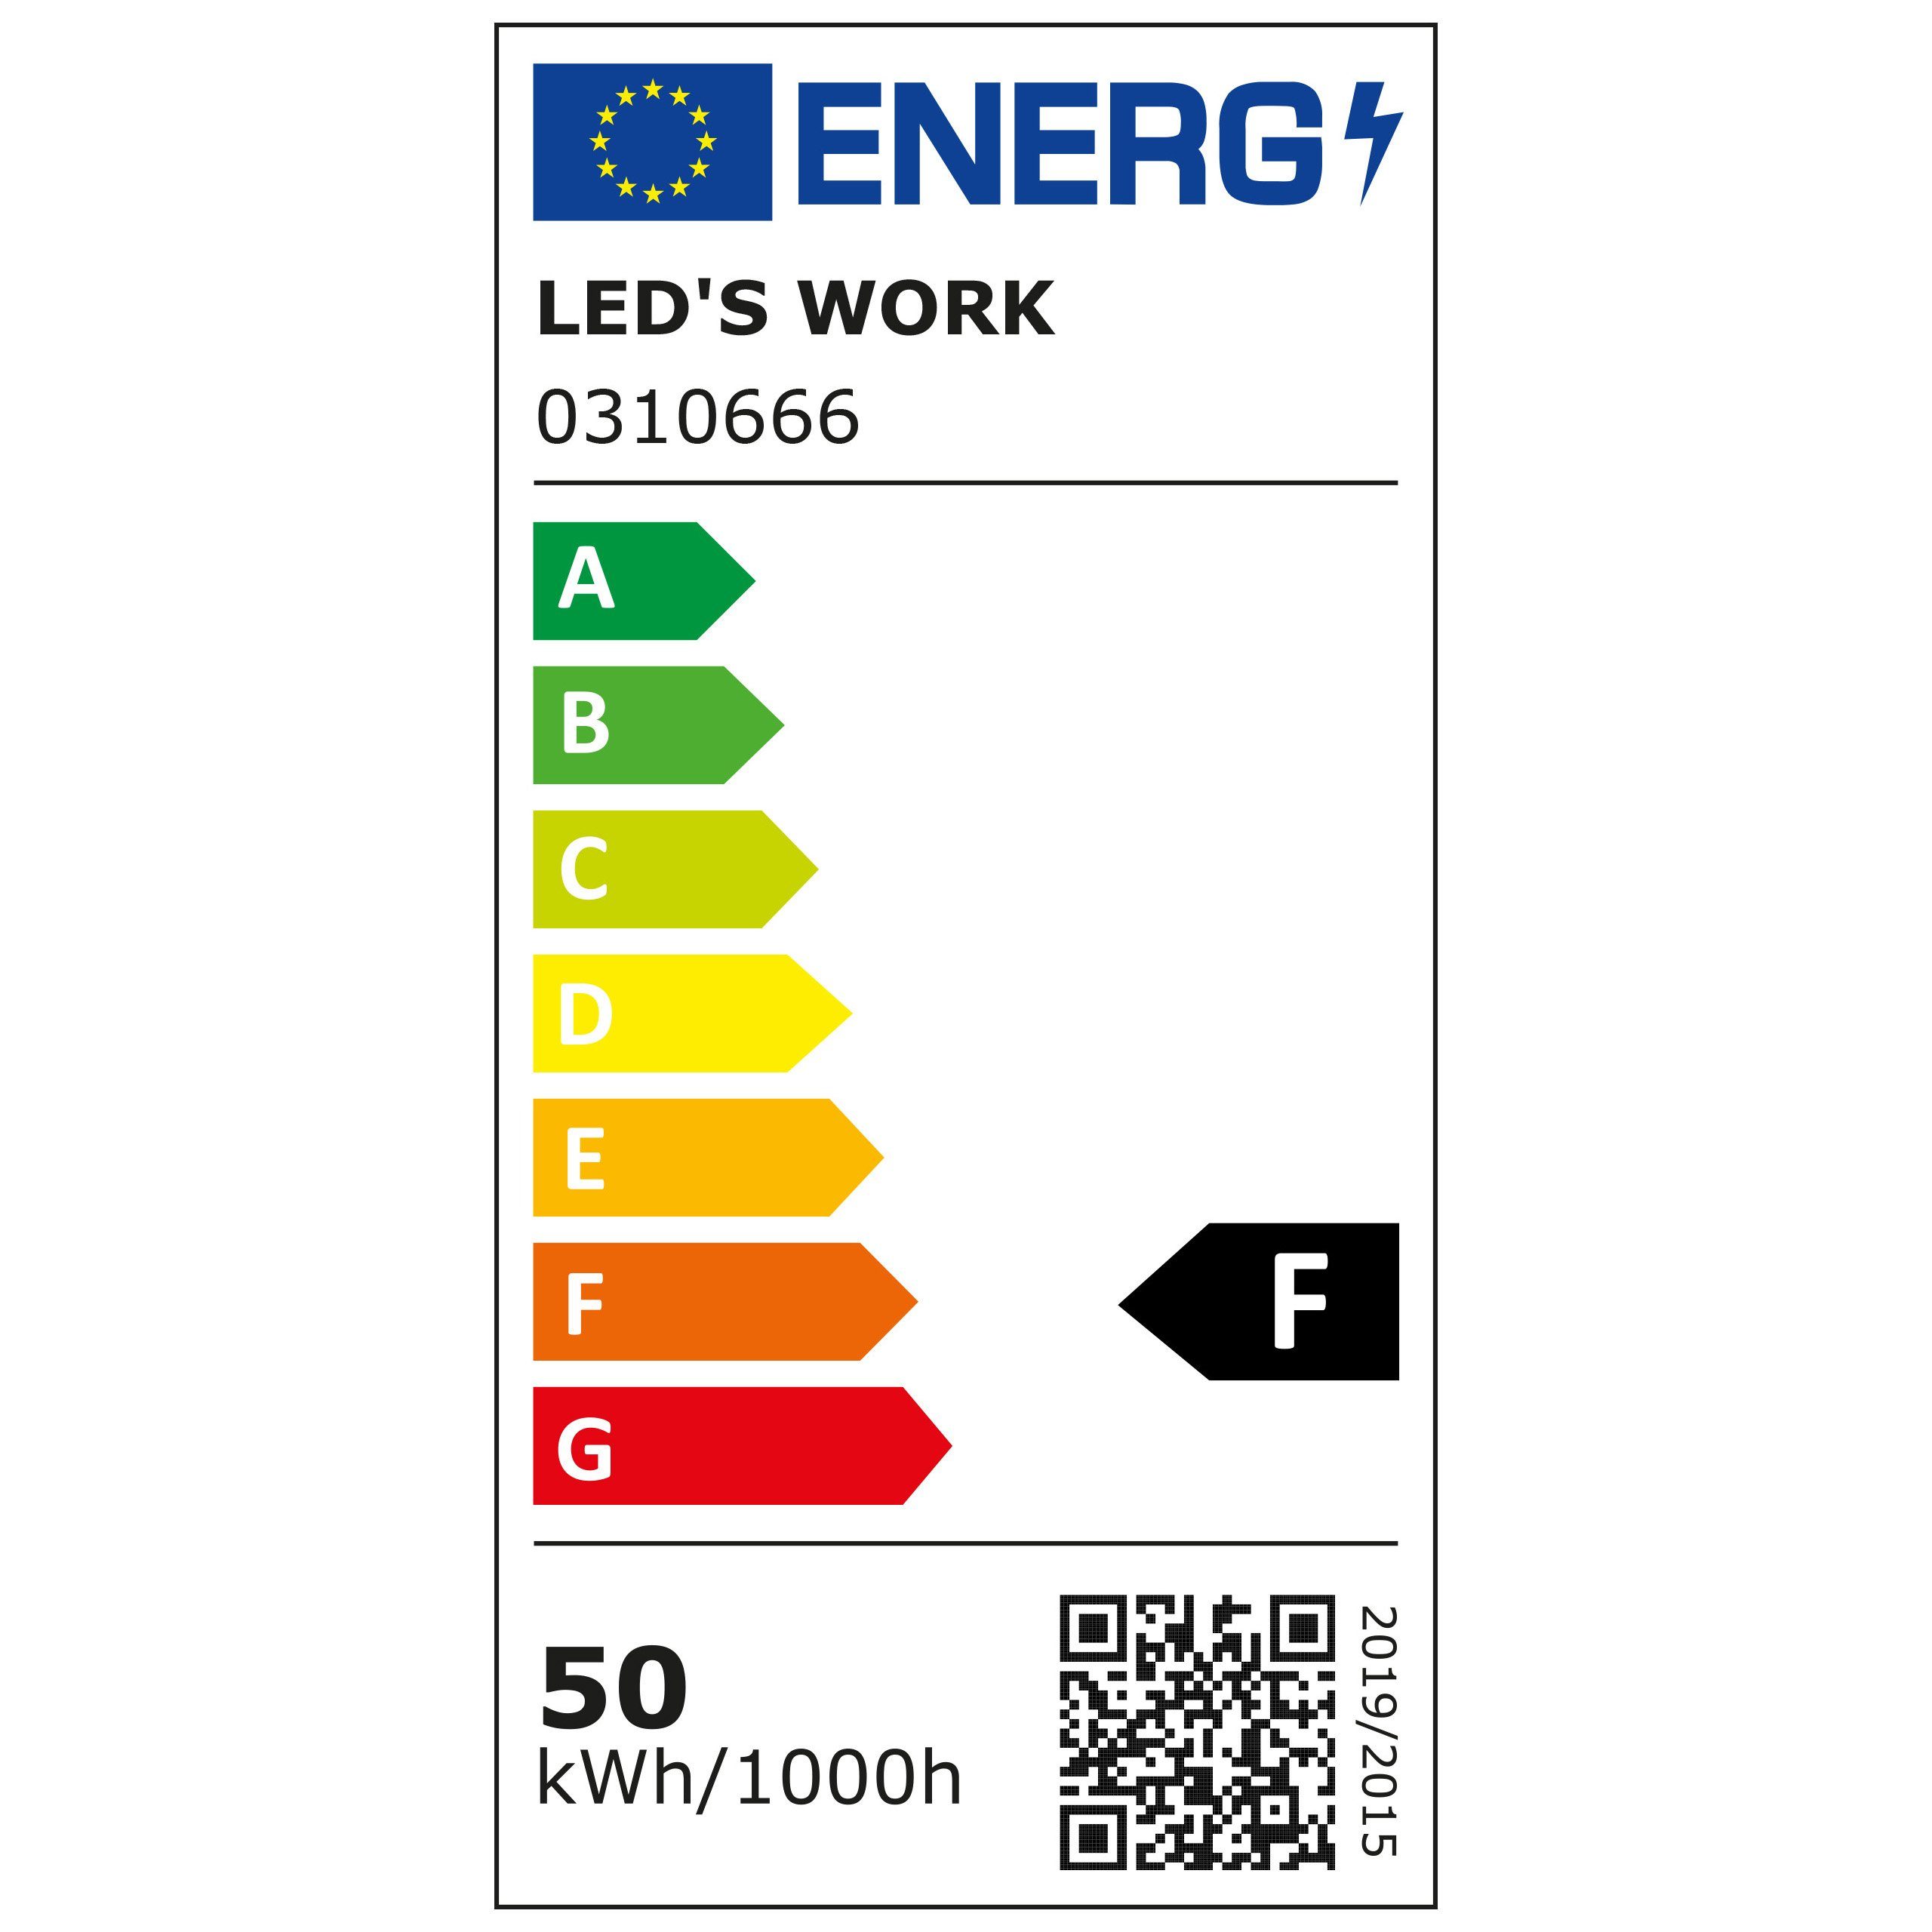 LED's work LED Arbeitsleuchte 0310666 m 3,0 50W IP54 neutralweiß Zuleitung LED-Arbeitsstrahler, LED